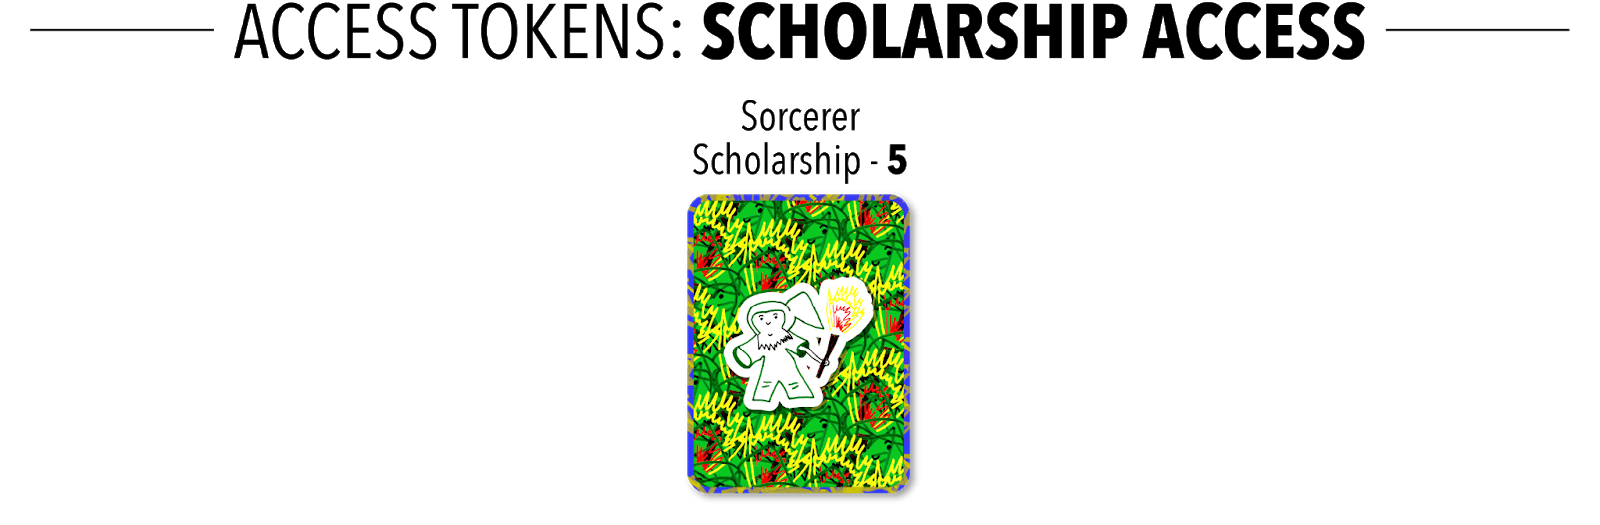 Scholarship Access Token